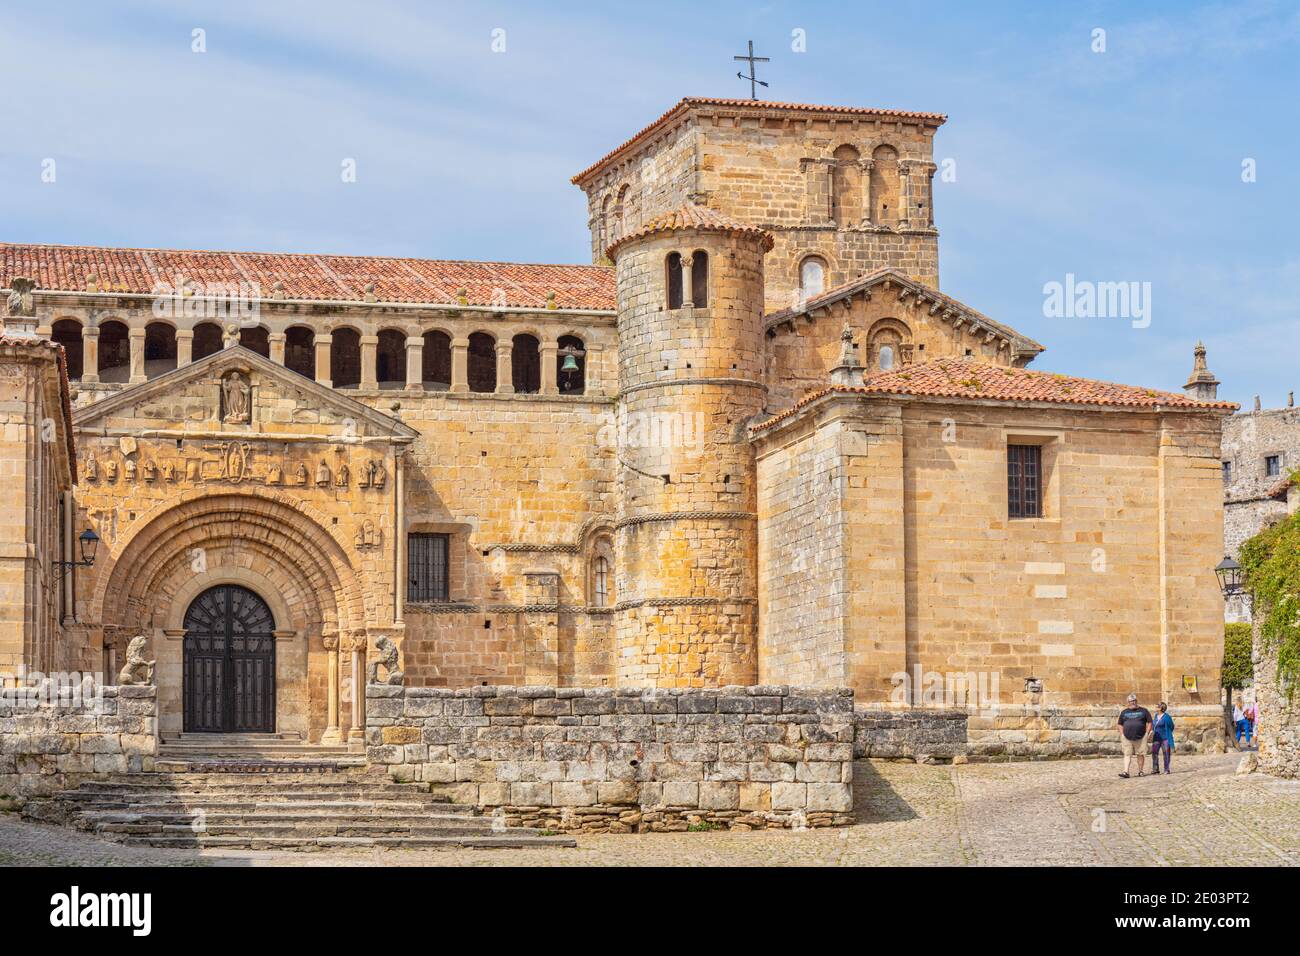 The Romanesque Church of the Colegiata, Santillana del Mar, Cantabria, Spain.  Full name: Colegiata de Santa Juliana de Santillana del Mar. Stock Photo